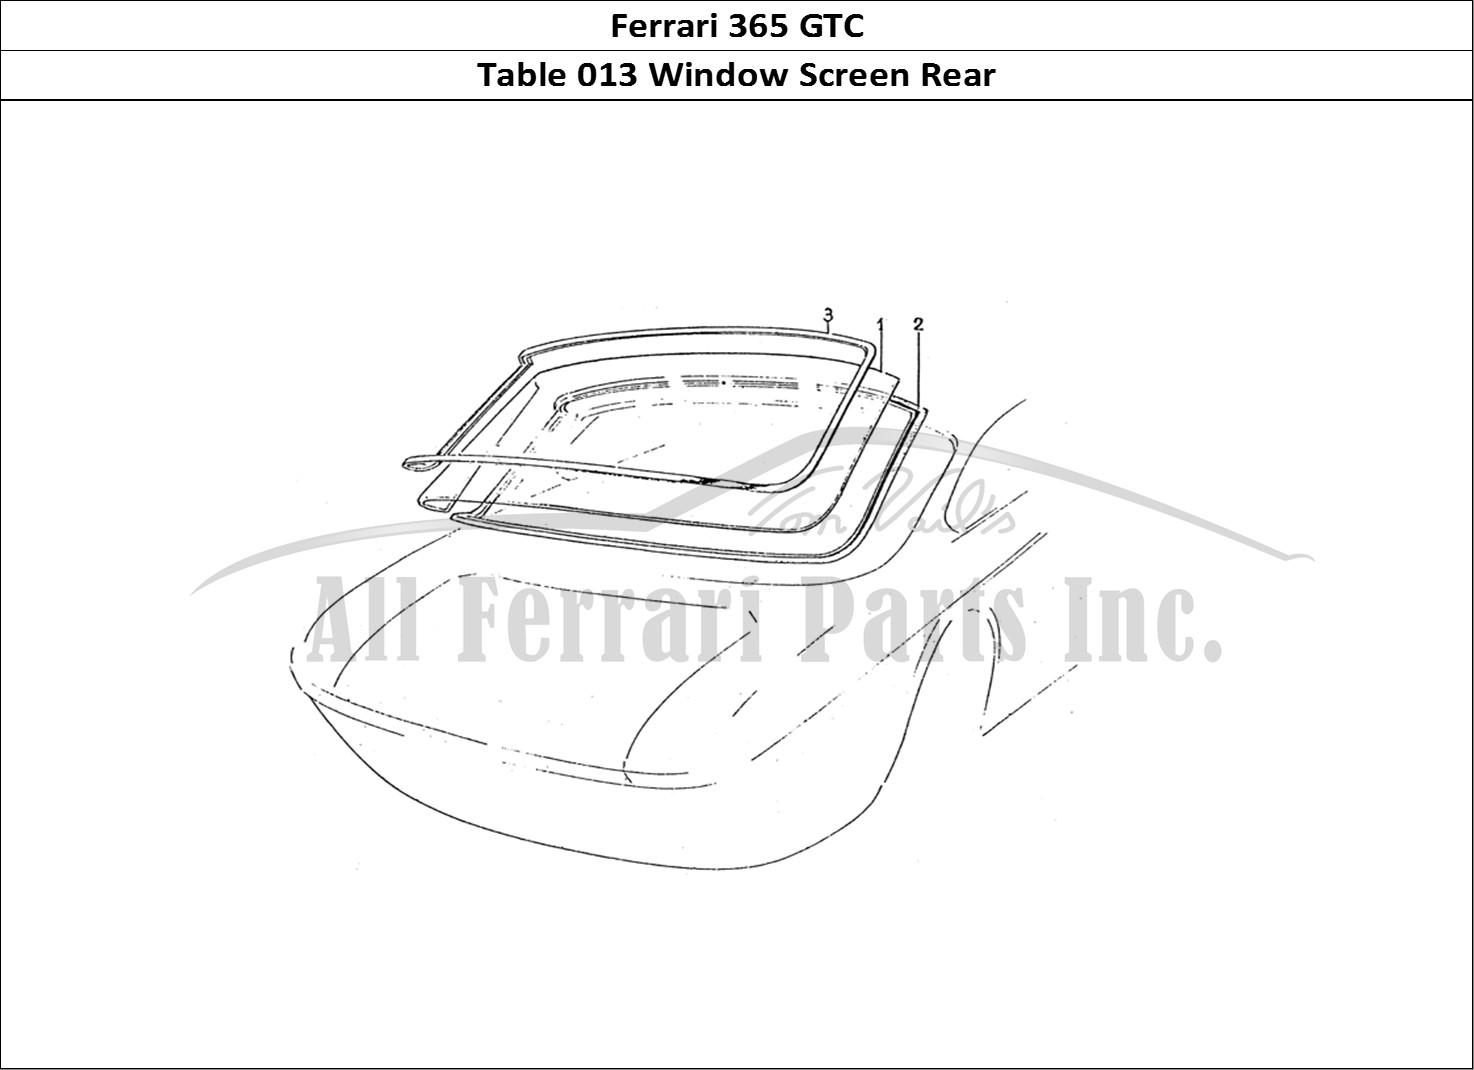 Ferrari Parts Ferrari 330 GTC (Coachwork) Page 013 Rear screen